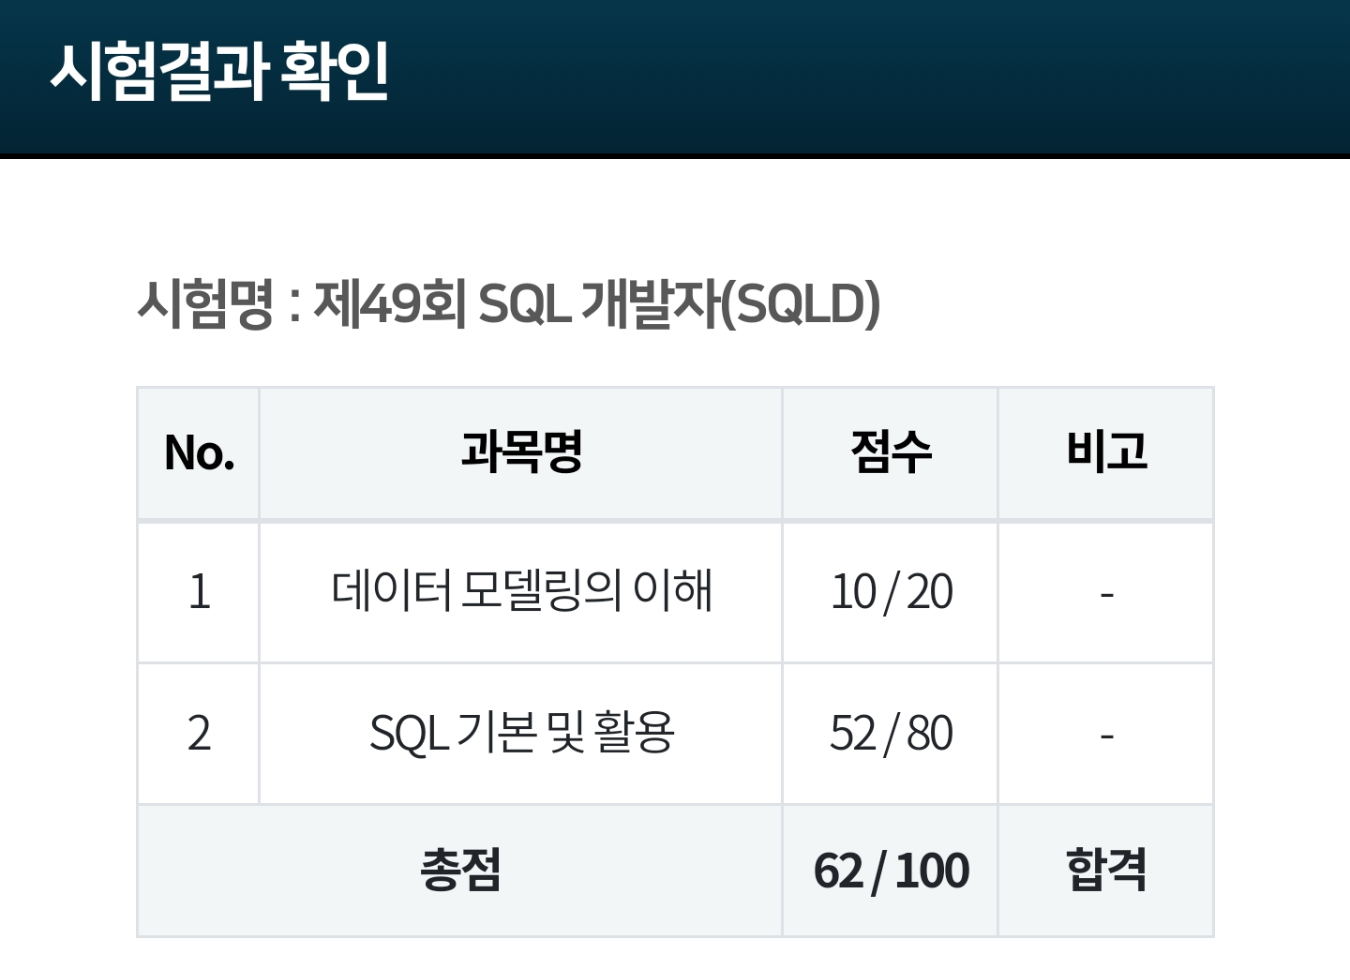 제 49회 SQLD 시험결과 
데이터모델링 10/20
SQL기본 및 활용 52/80
총점 62/100 합격